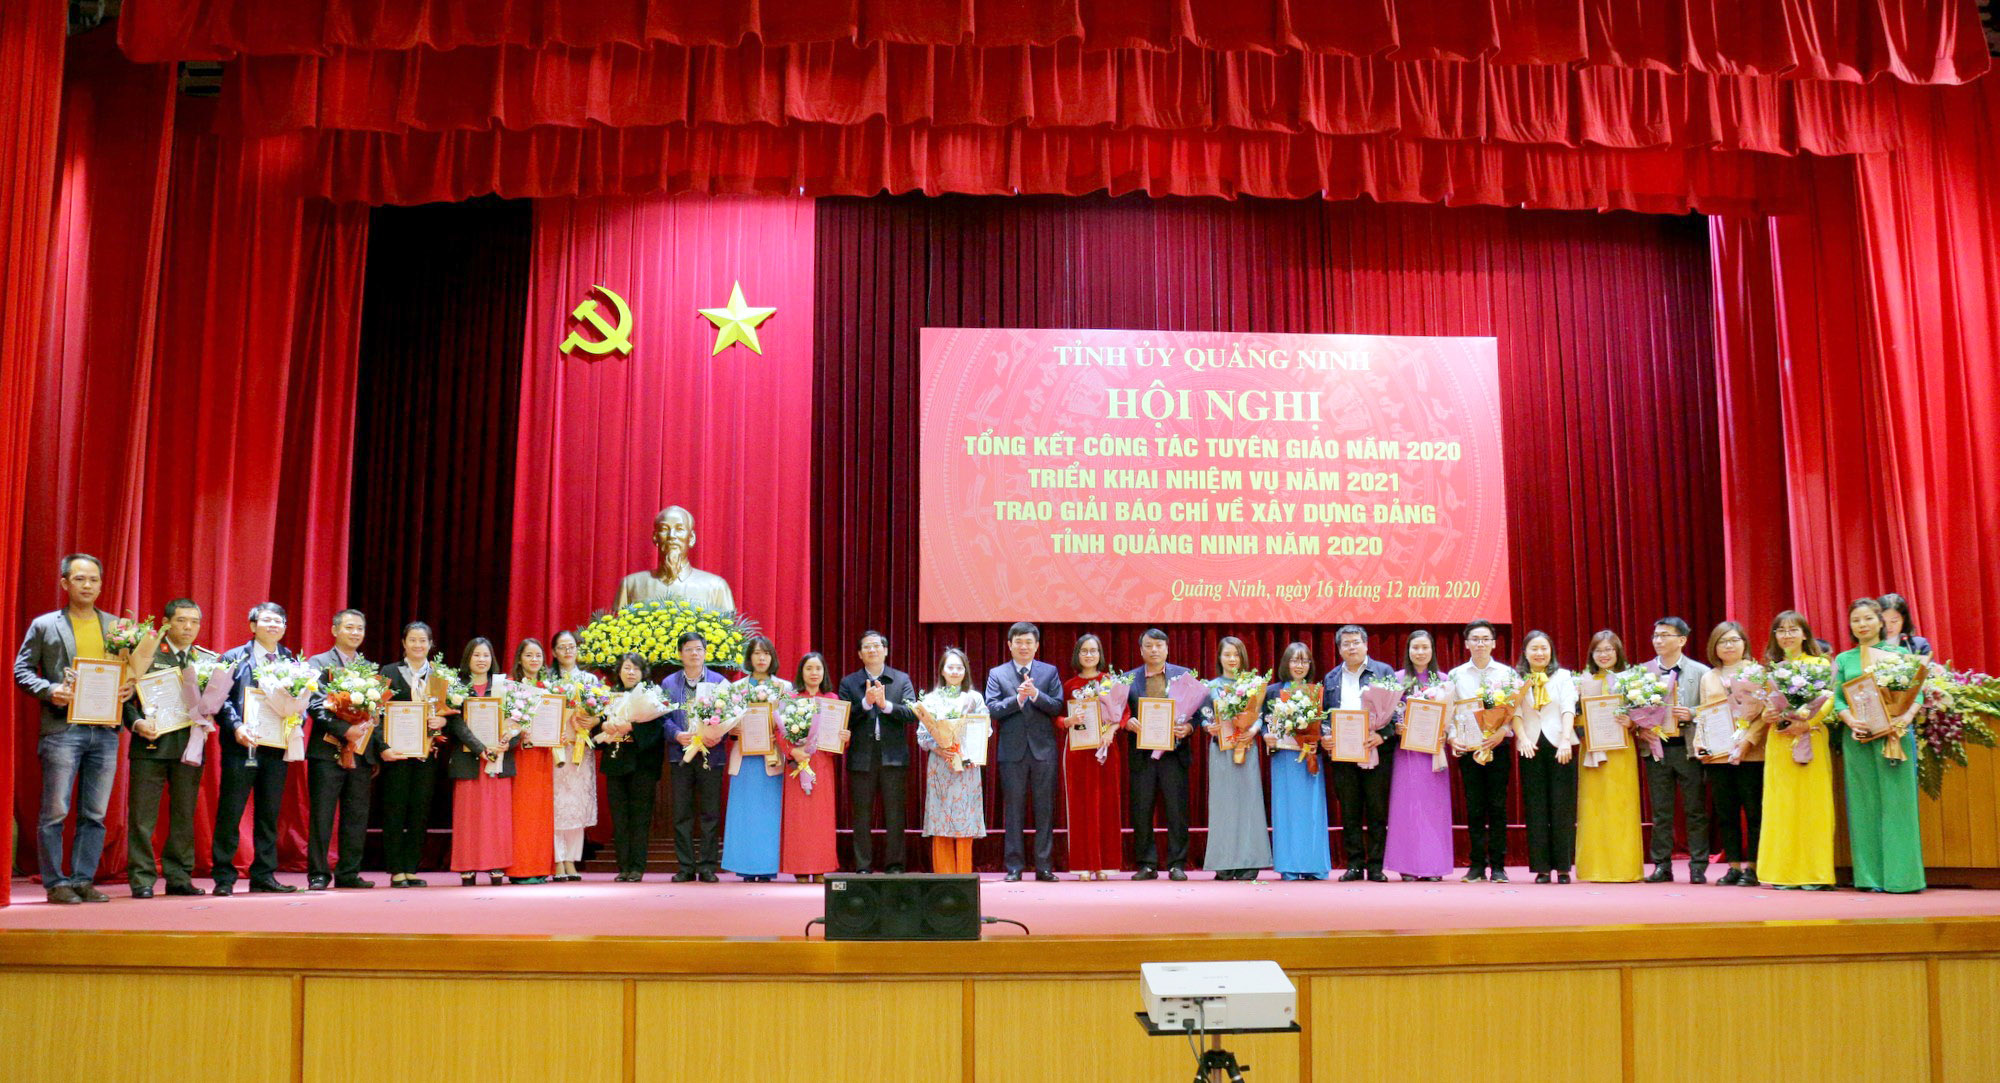 27 tác giả, nhóm tác giả đoạt giải tại Giải Búa liềm vàng tỉnh Quảng Ninh 2020.